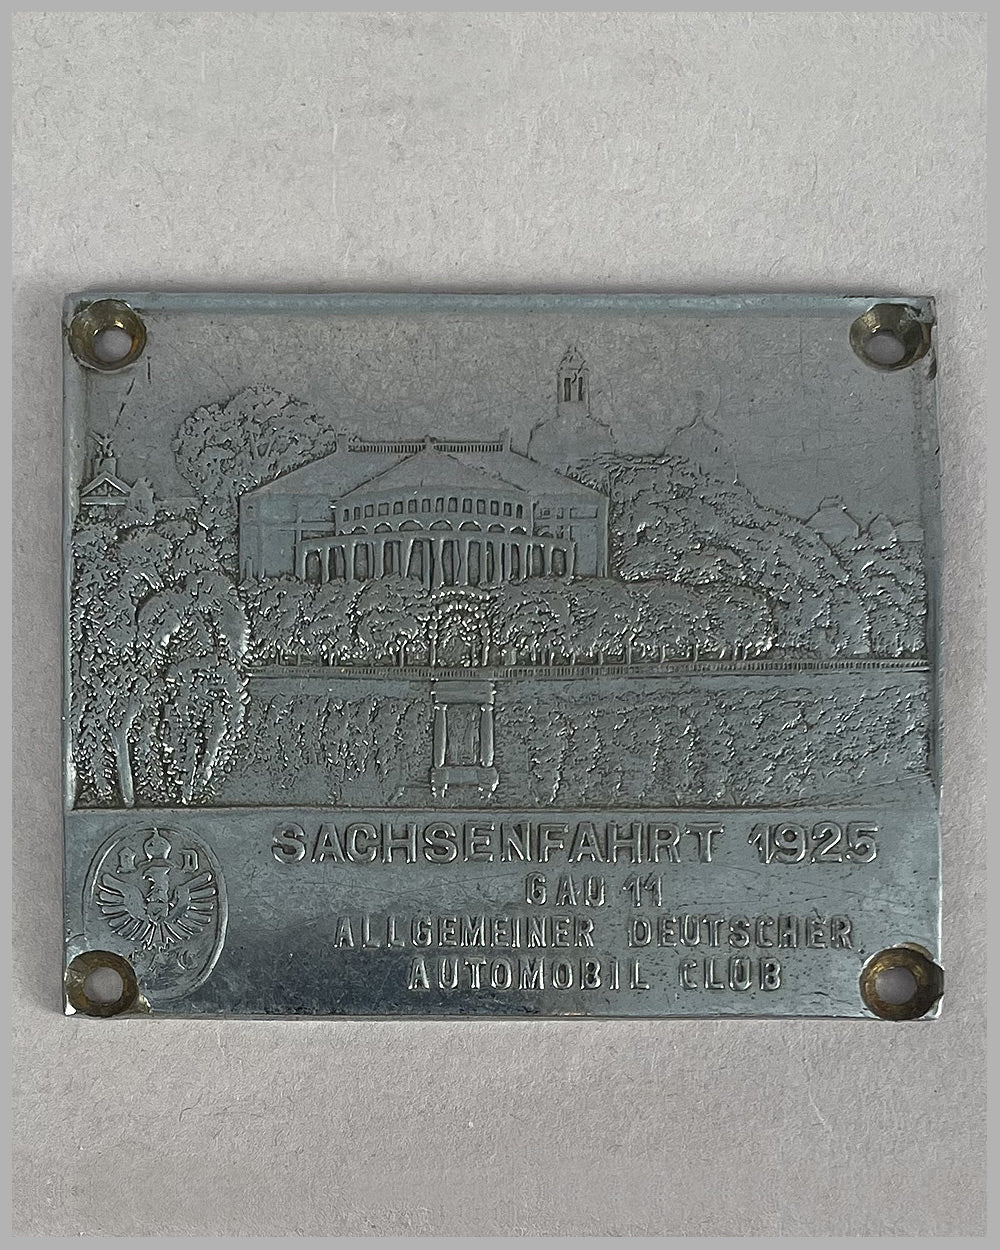 Sachsenfahrt 1925 dash plaque by the Allgemeiner Deutscher Automibil Club